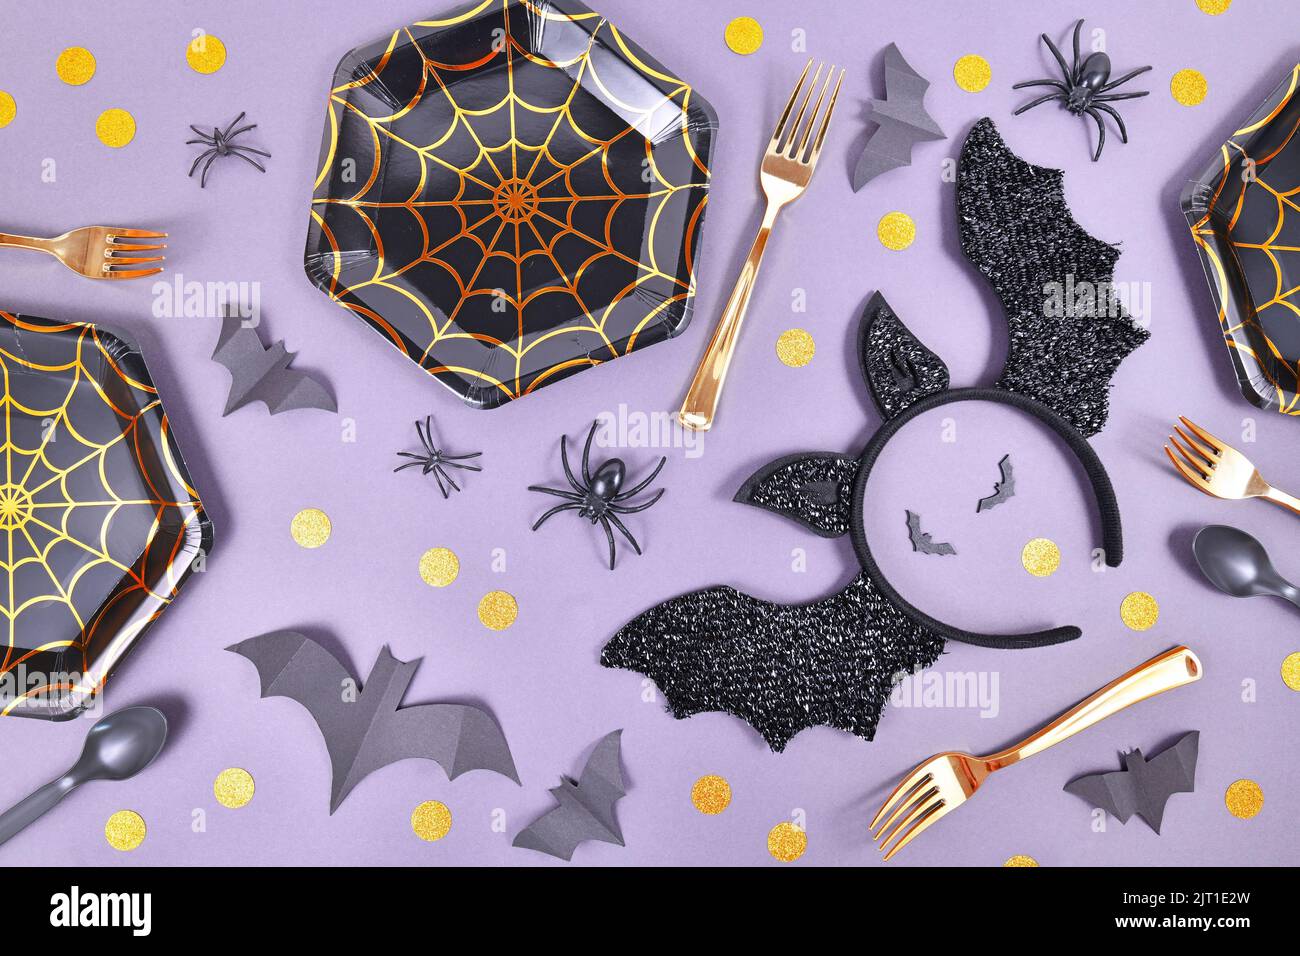 Halloween fiesta plana con placas de tela de araña, diadema de murciélago traje, arañas y confeti sobre fondo violeta Foto de stock